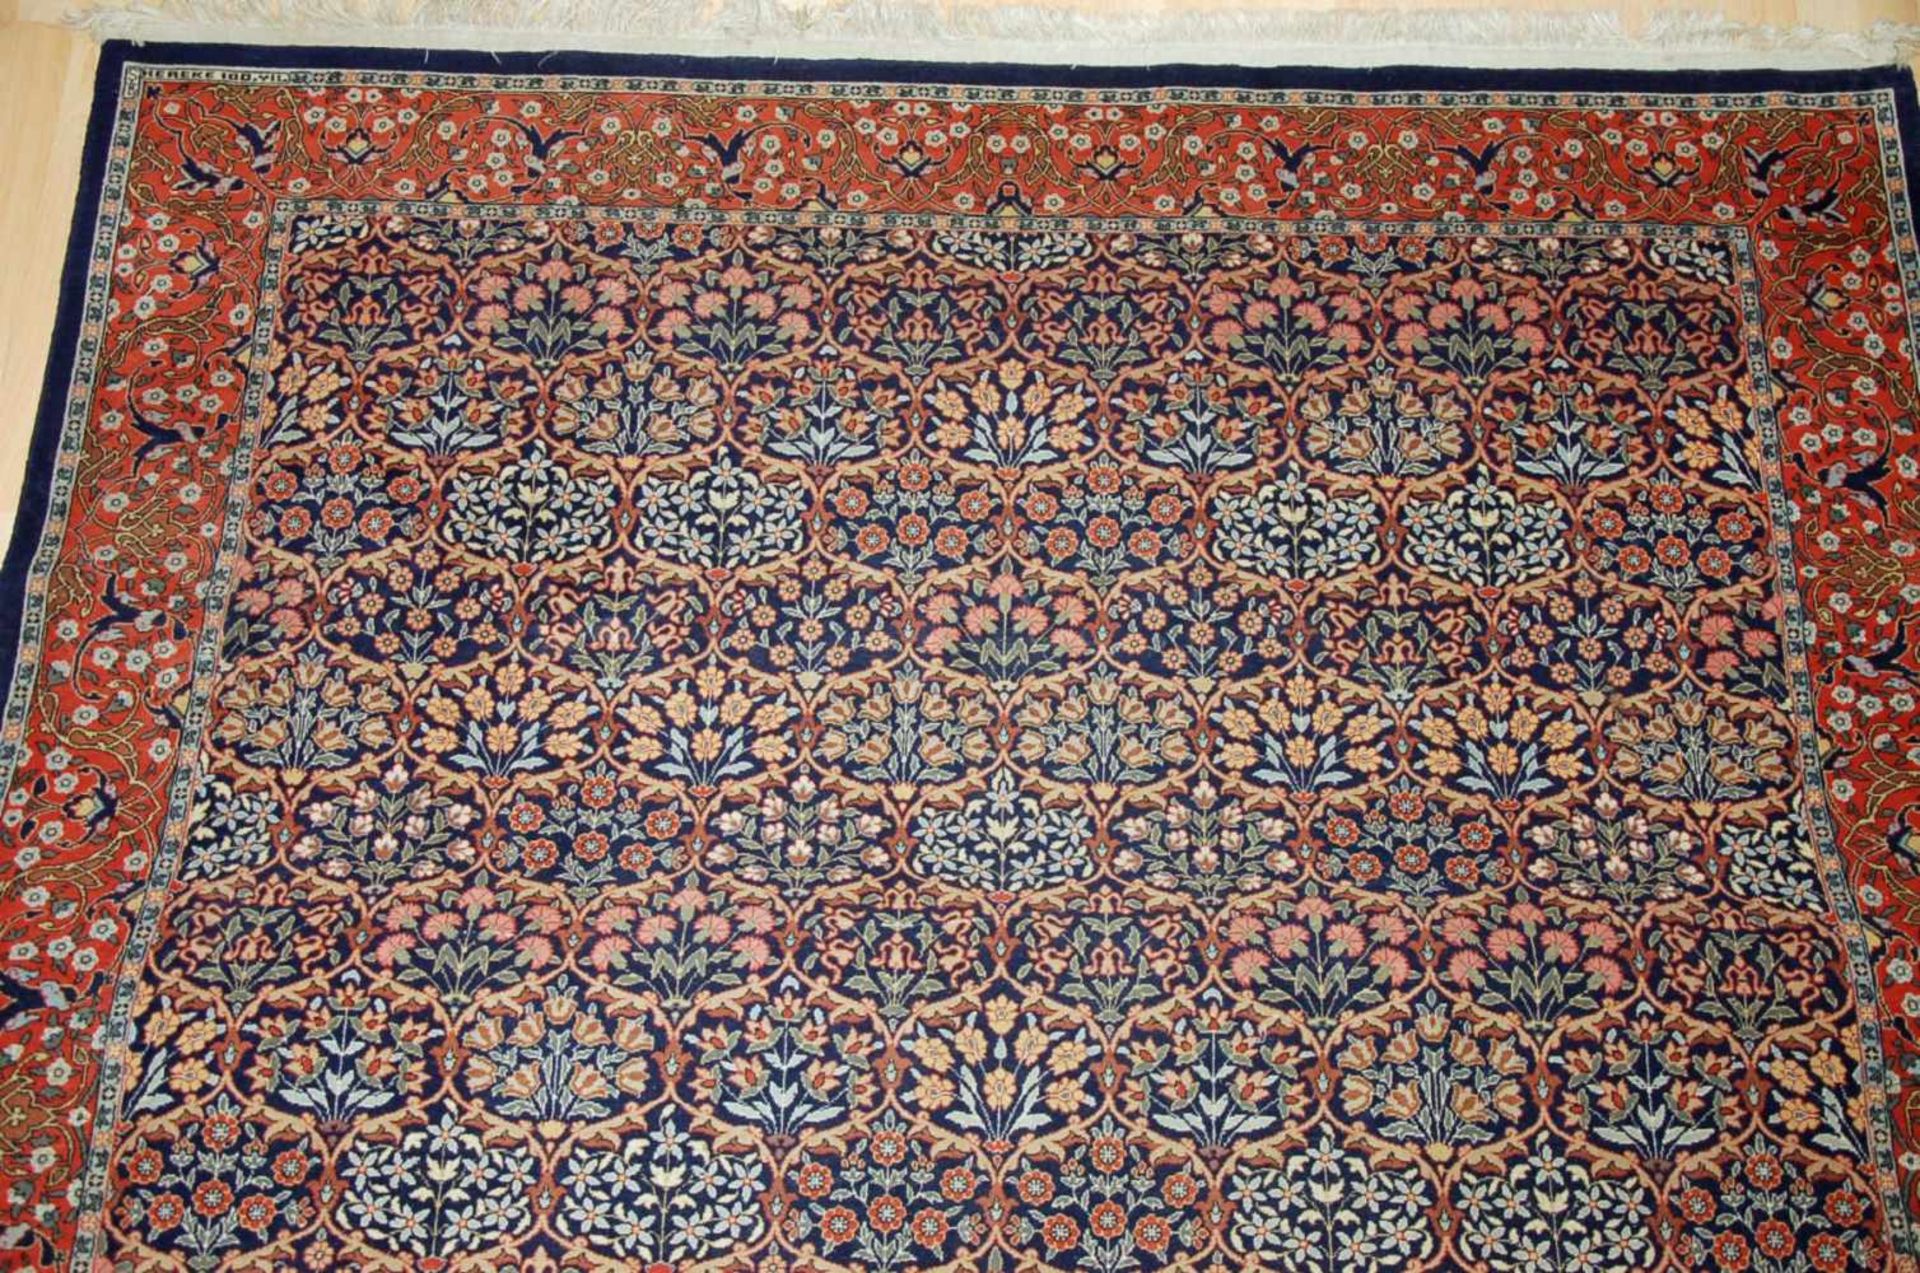 Signierter Orientteppich, Hereke, Türkeica. 300 x 204 cm.